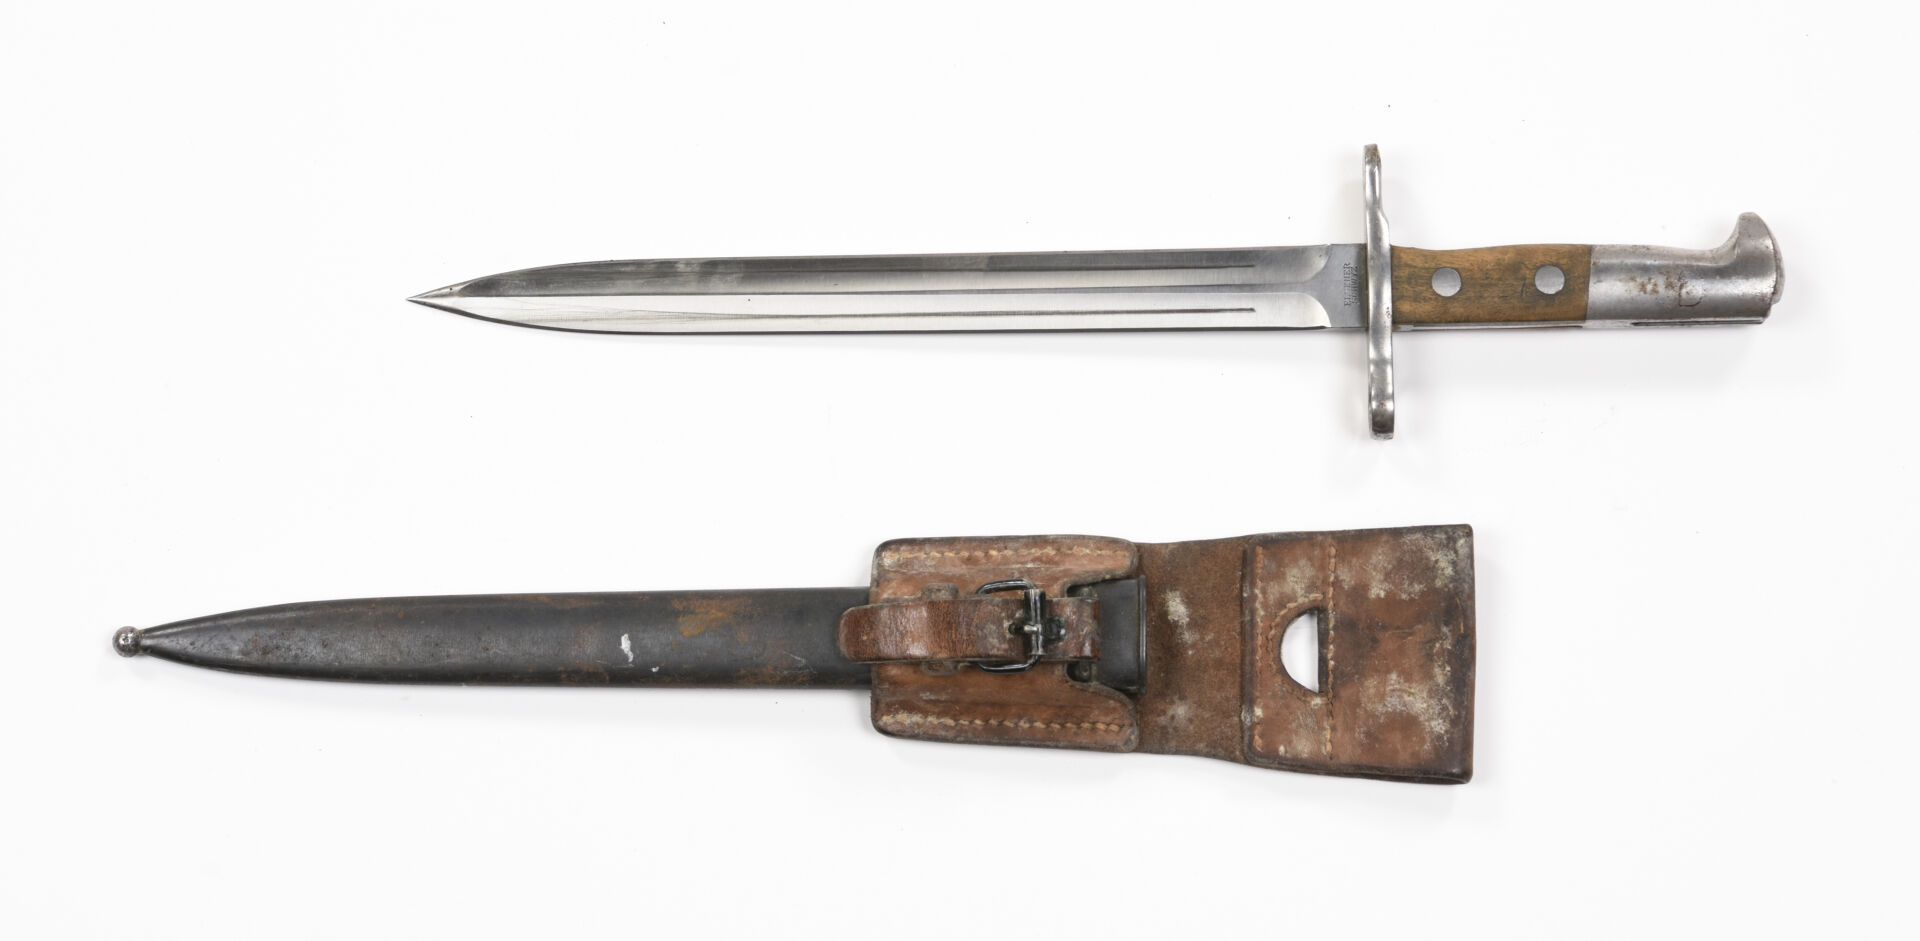 Null Baionetta svizzera 1899 con il suo tassello 
Buono stato